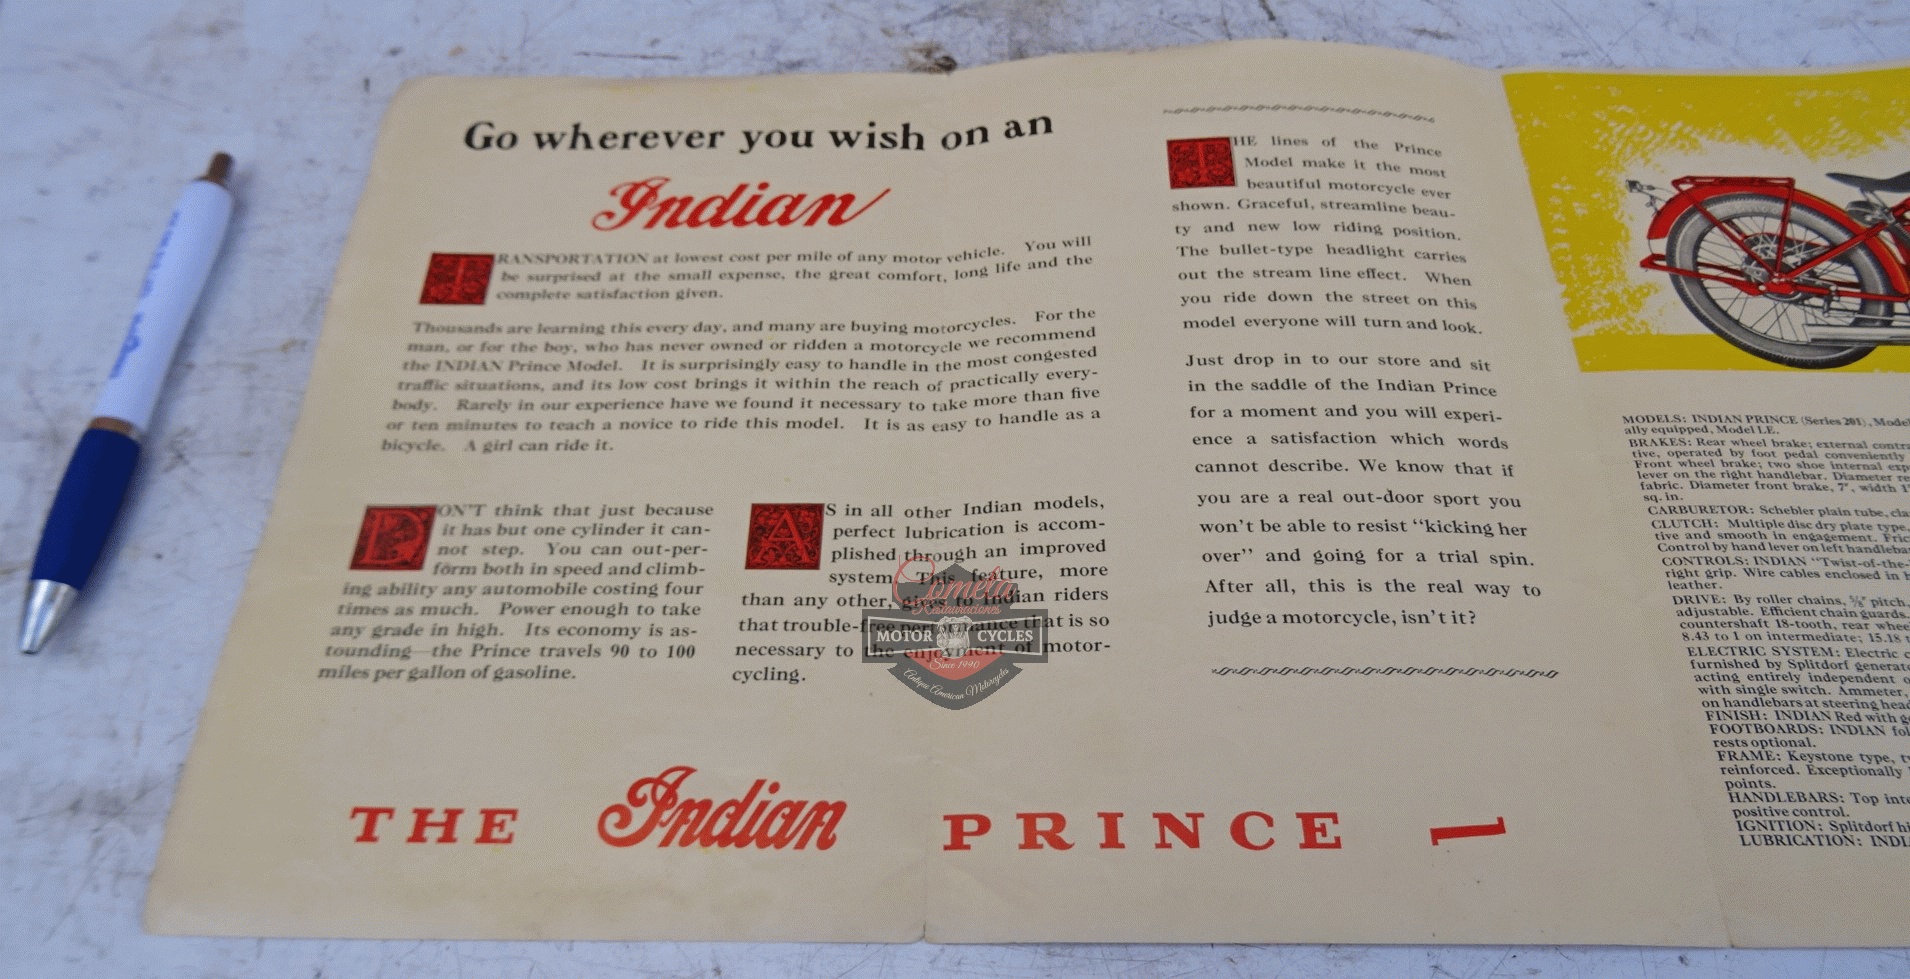 CATALOGO ORIGINAL INDIAN PRINCE MODELO 201 AÑO 1928  